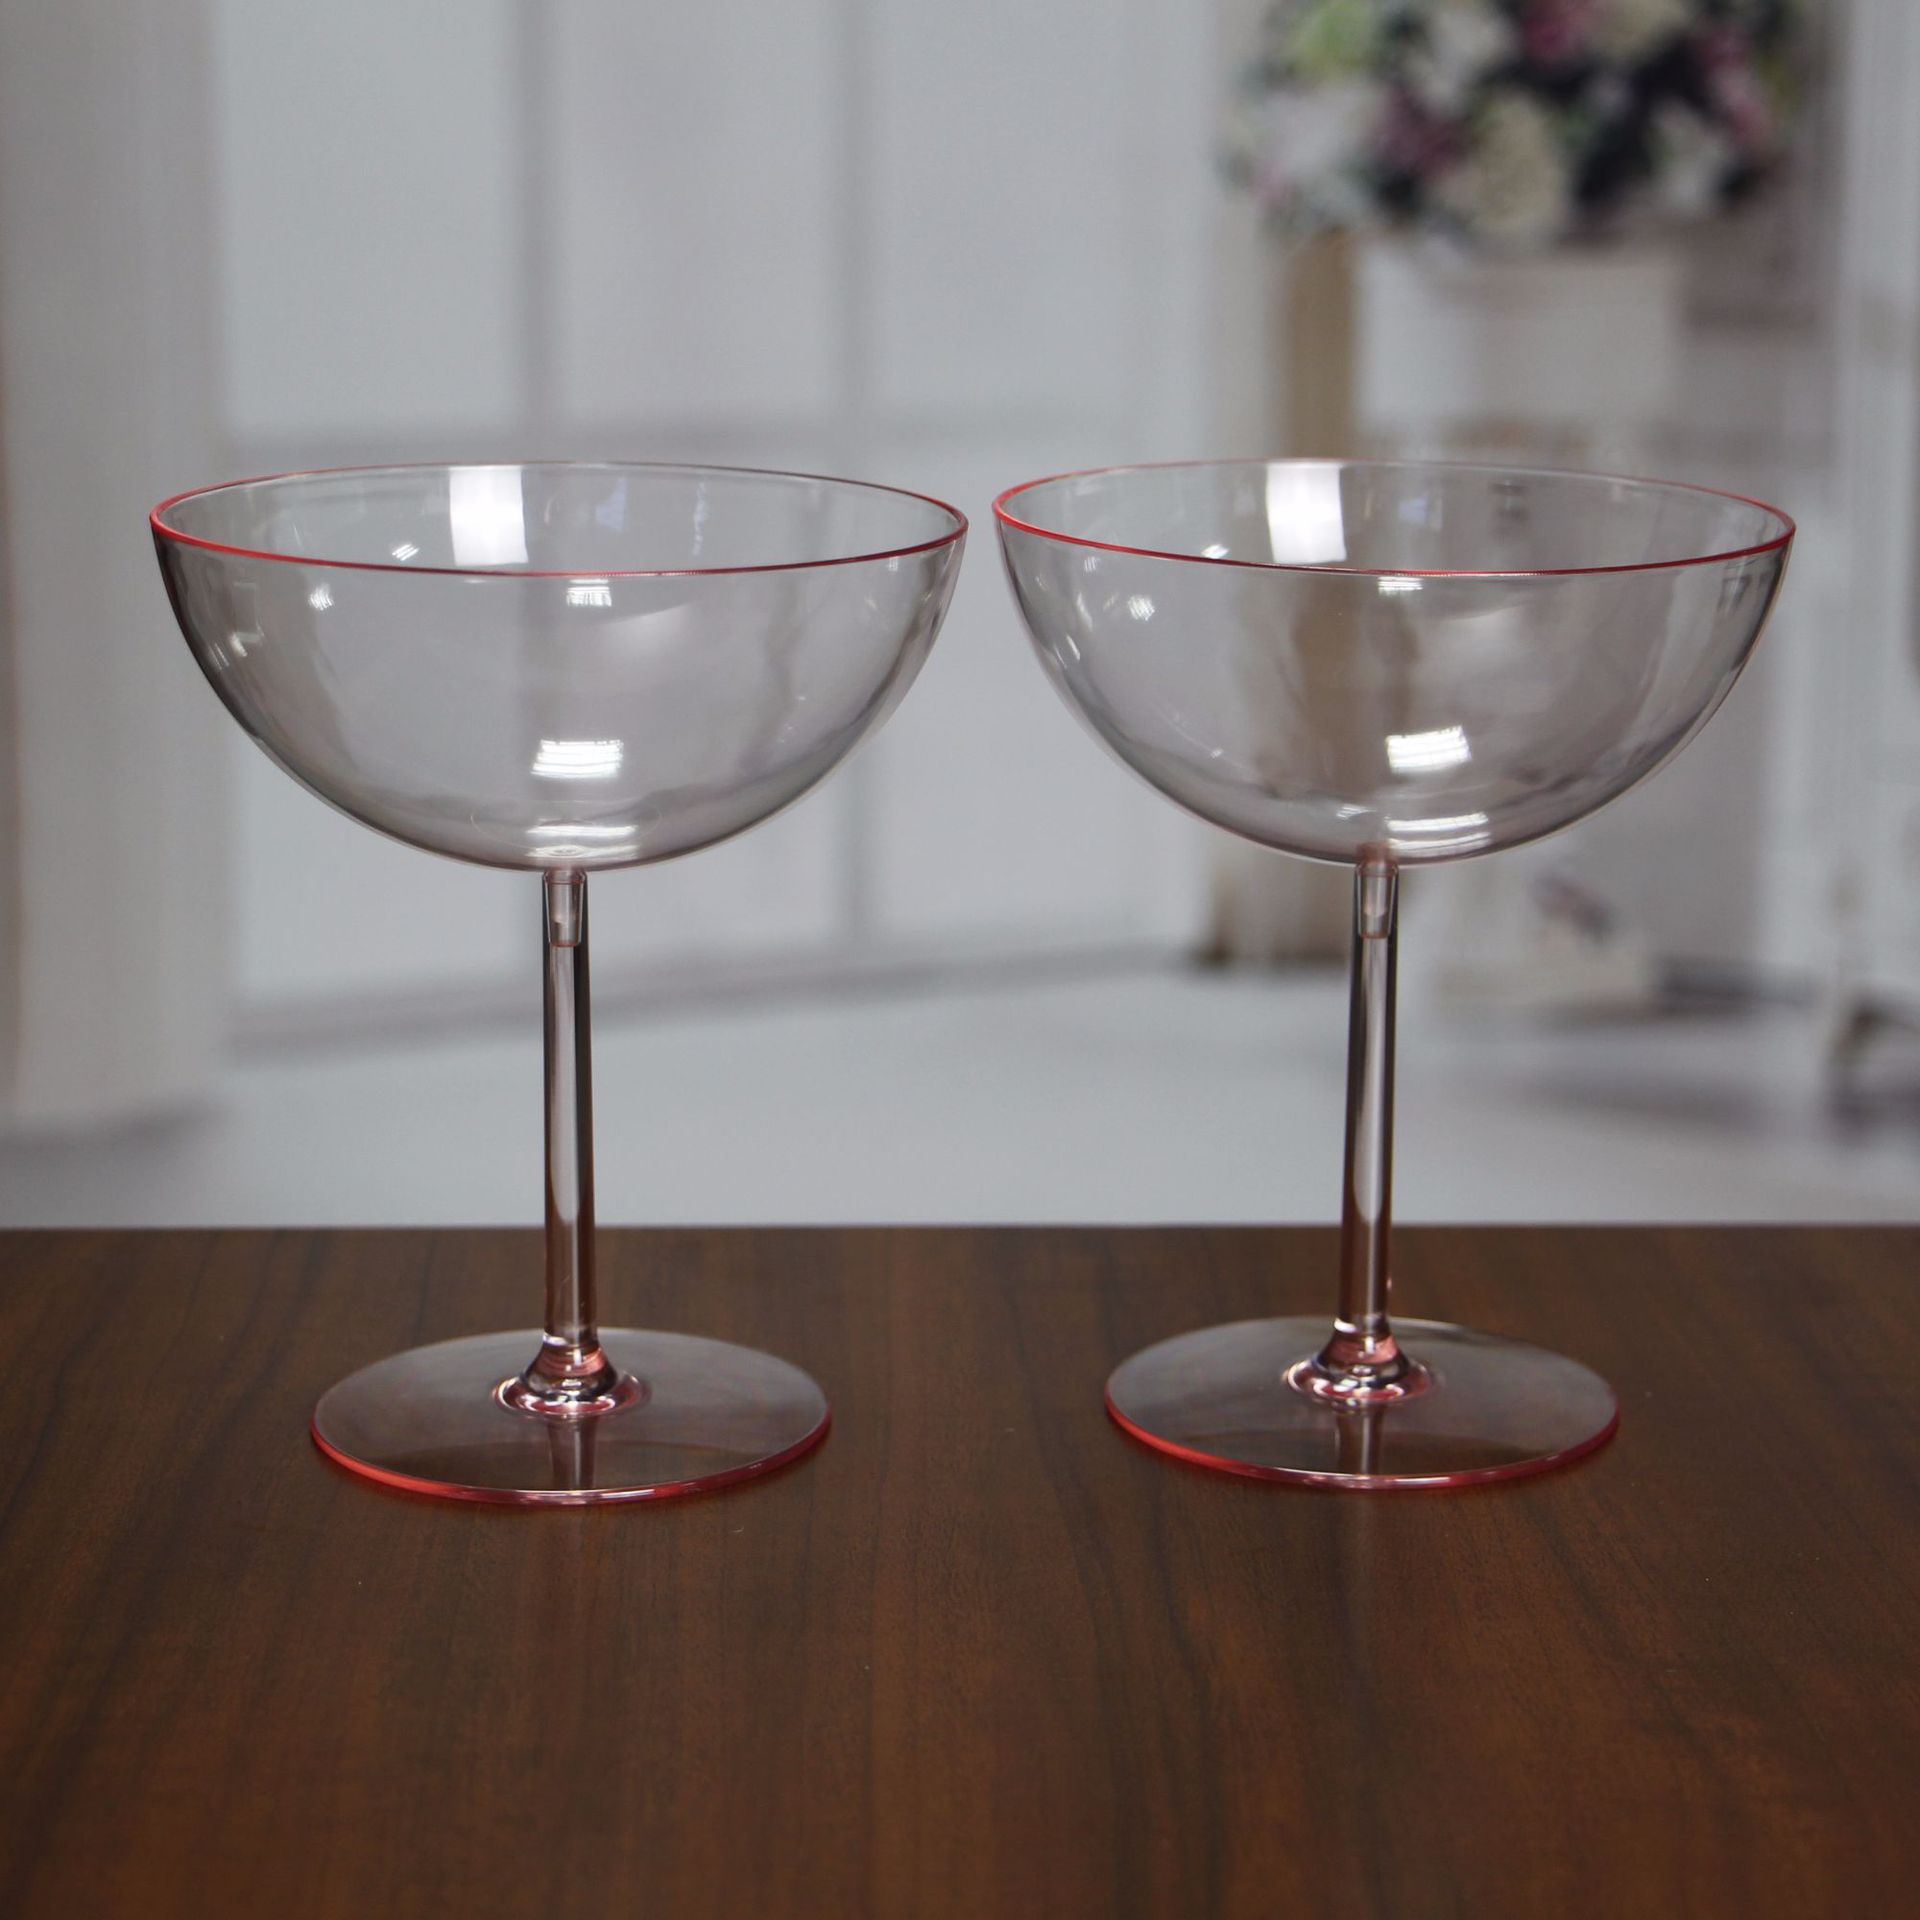 10安士PS一次性塑料酒杯透明红马天尼高脚杯一次性塑料鸡尾酒杯示例图10